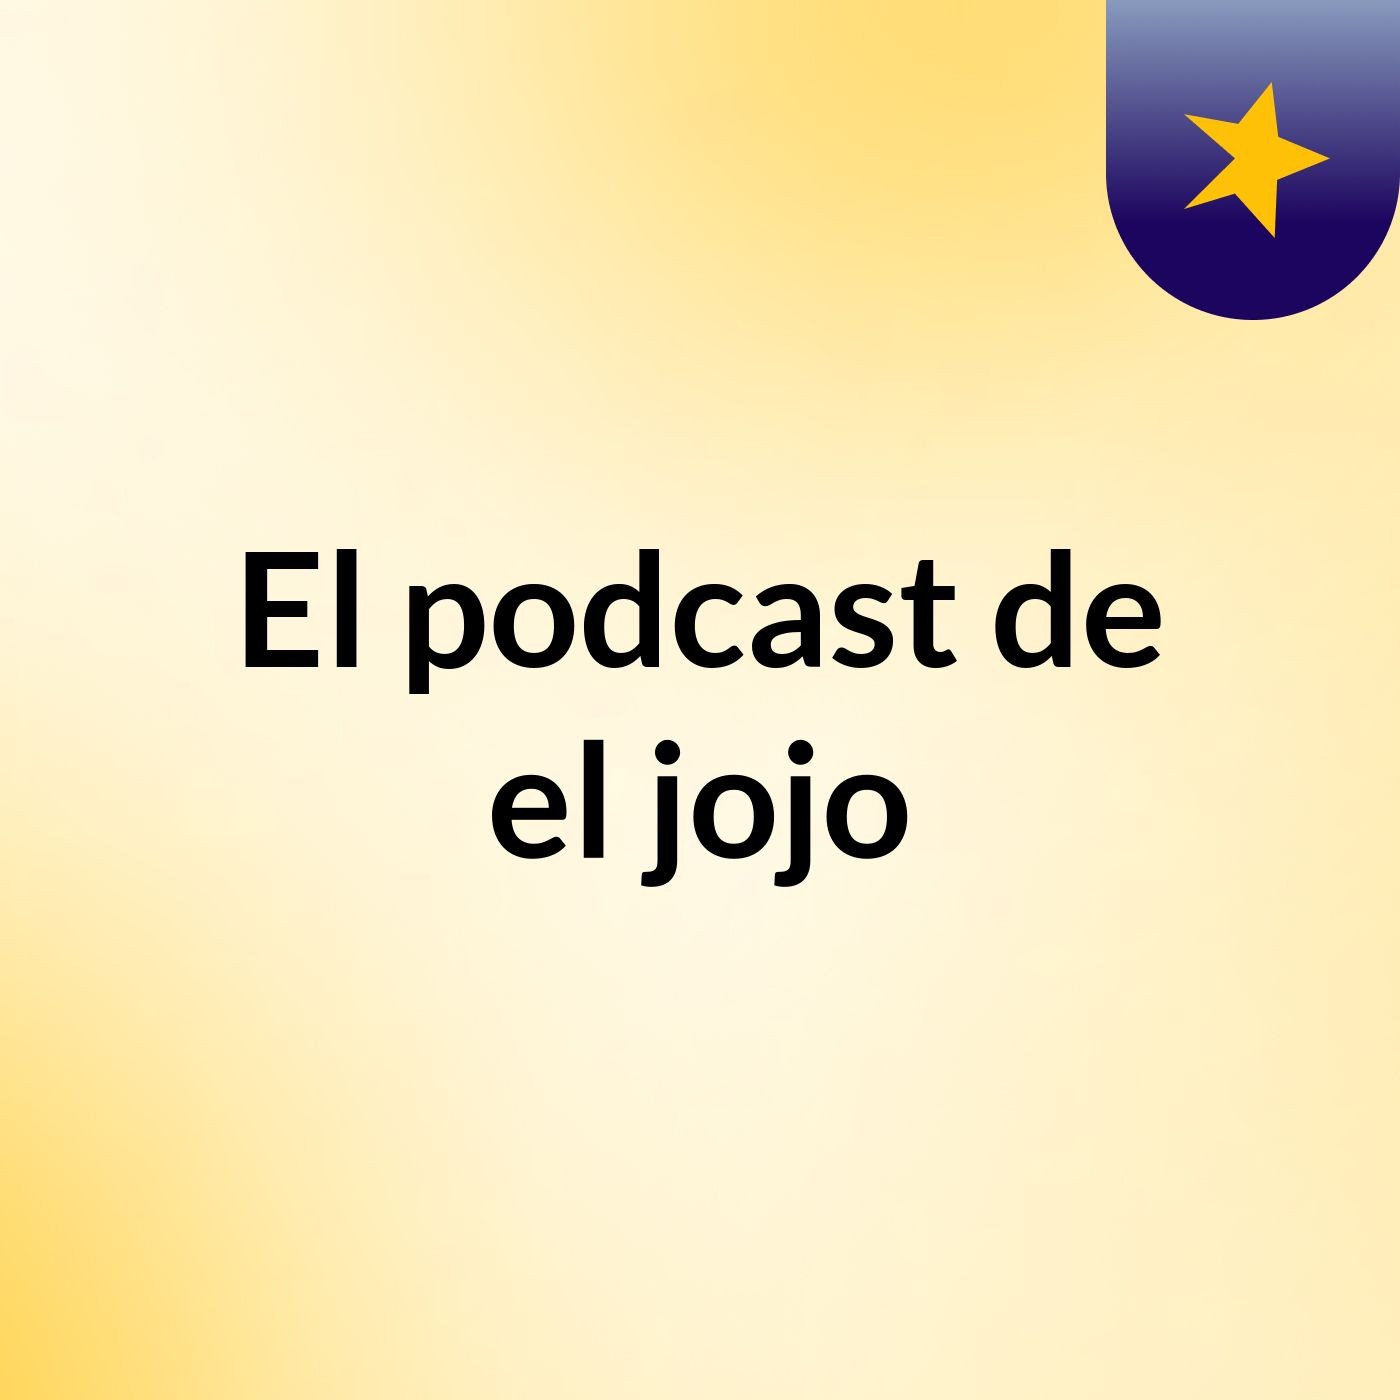 Episodio 2 - El podcast de el jojo